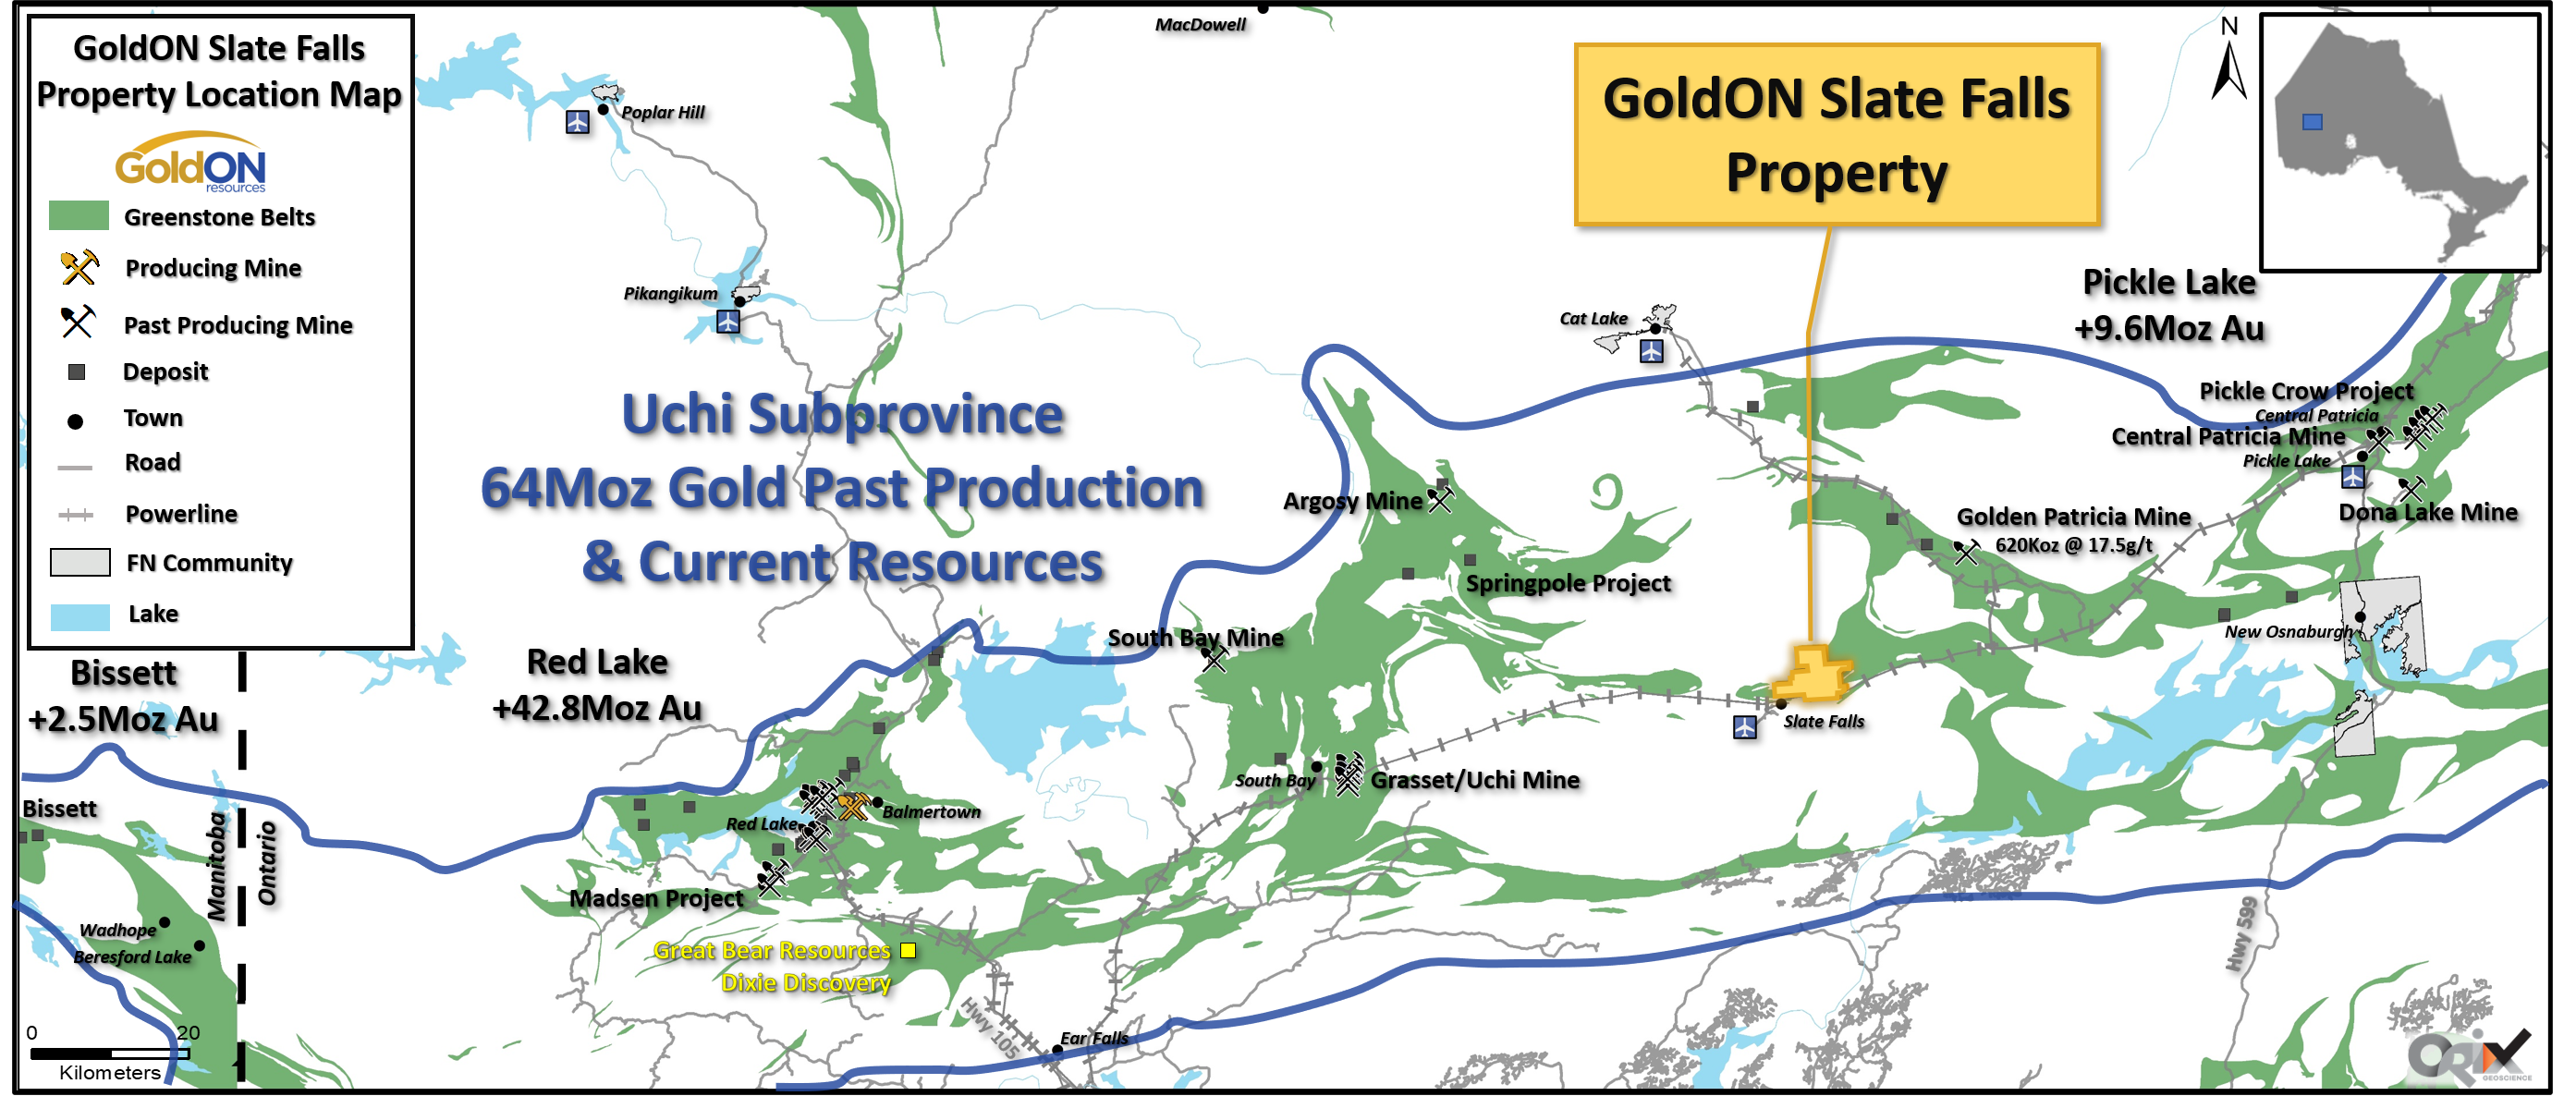 GoldON Resources Ltd., Thursday, August 13, 2020, Press release picture